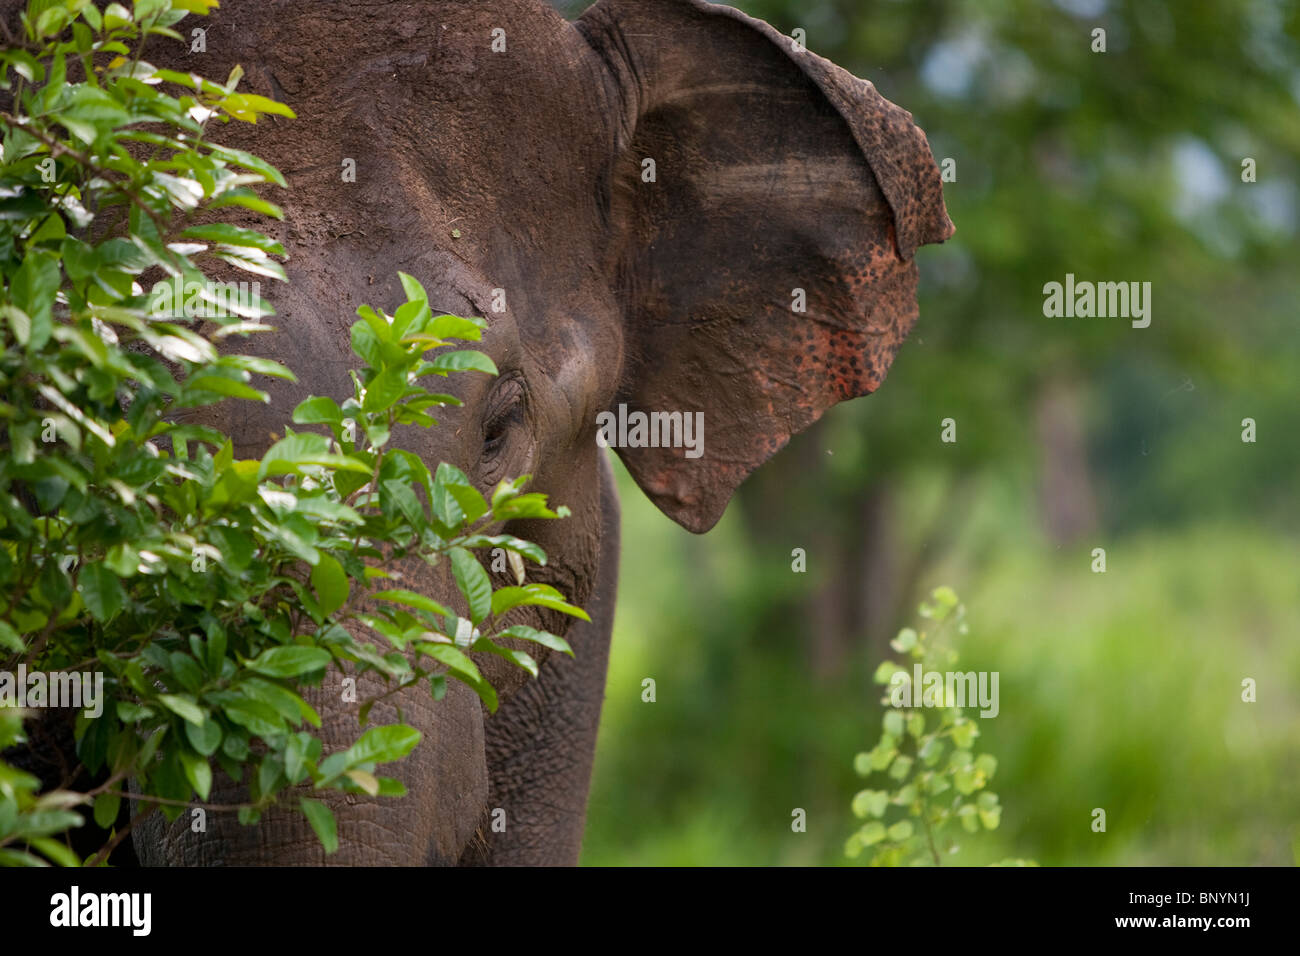 Asian Elephant, Elephas maximus, Indischer Elephant, Uda Walawe National Park, Sri Lanka Stock Photo